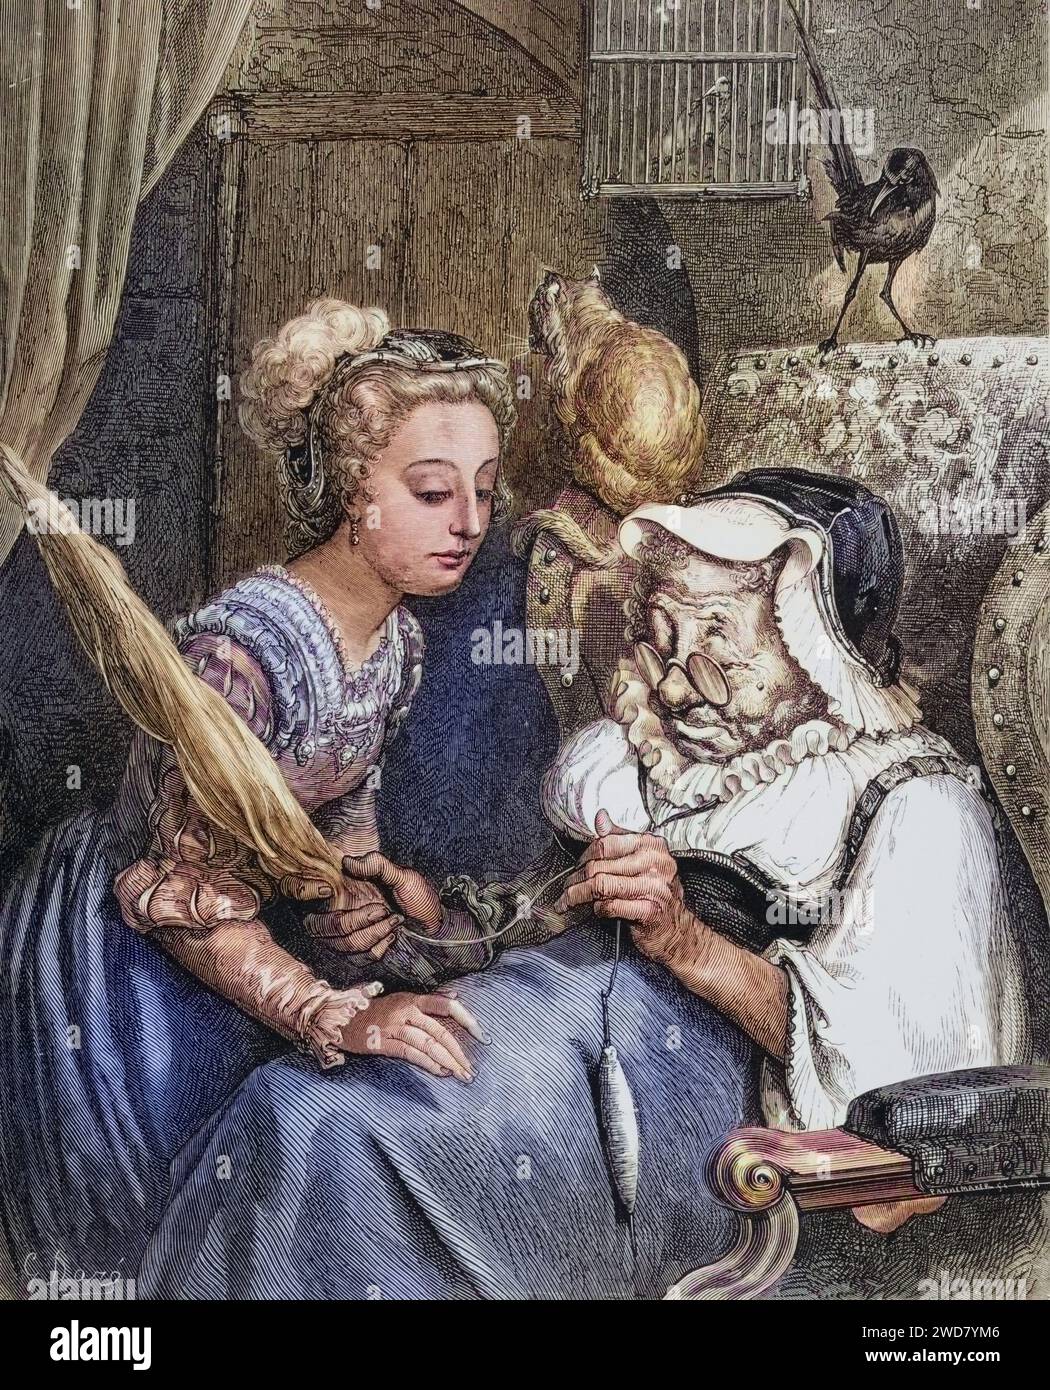 Illustrazione von Gustave Dore (1832-1883) für Fairy World von Tom Hood mit der Prinzessin aus Dornröschen im Gespräch mit der alten fee spite, Historisch, digital restaurierte Reproduktion von einer Vorlage aus dem 19. Jahrhundert, data record non indicata Foto Stock